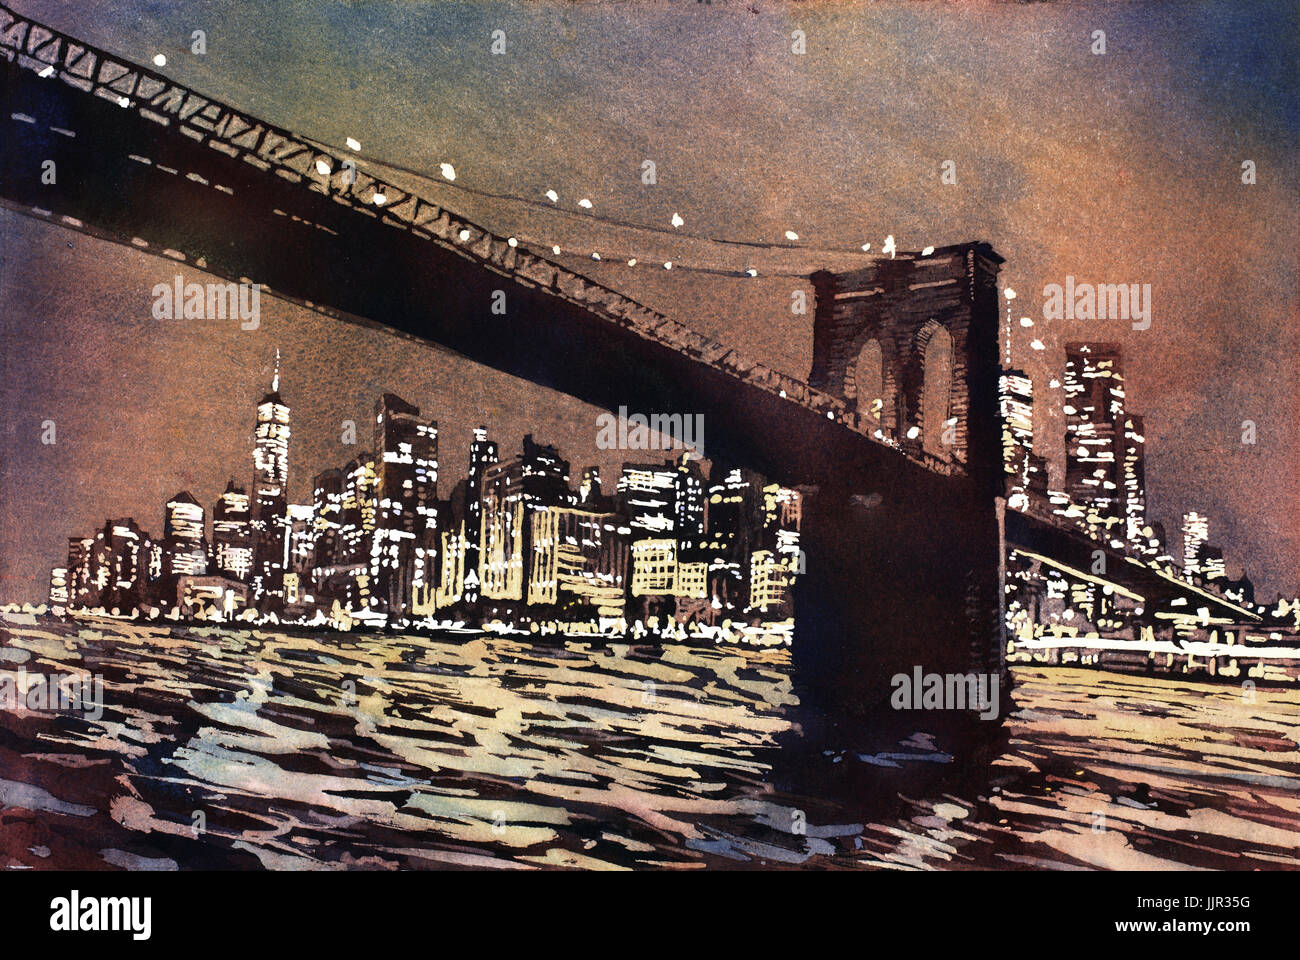 Il Ponte di Brooklyn e grattacieli di Manhattan al tramonto nella città di New York - New York, Stati Uniti d'America. La pittura ad acquerello. Foto Stock